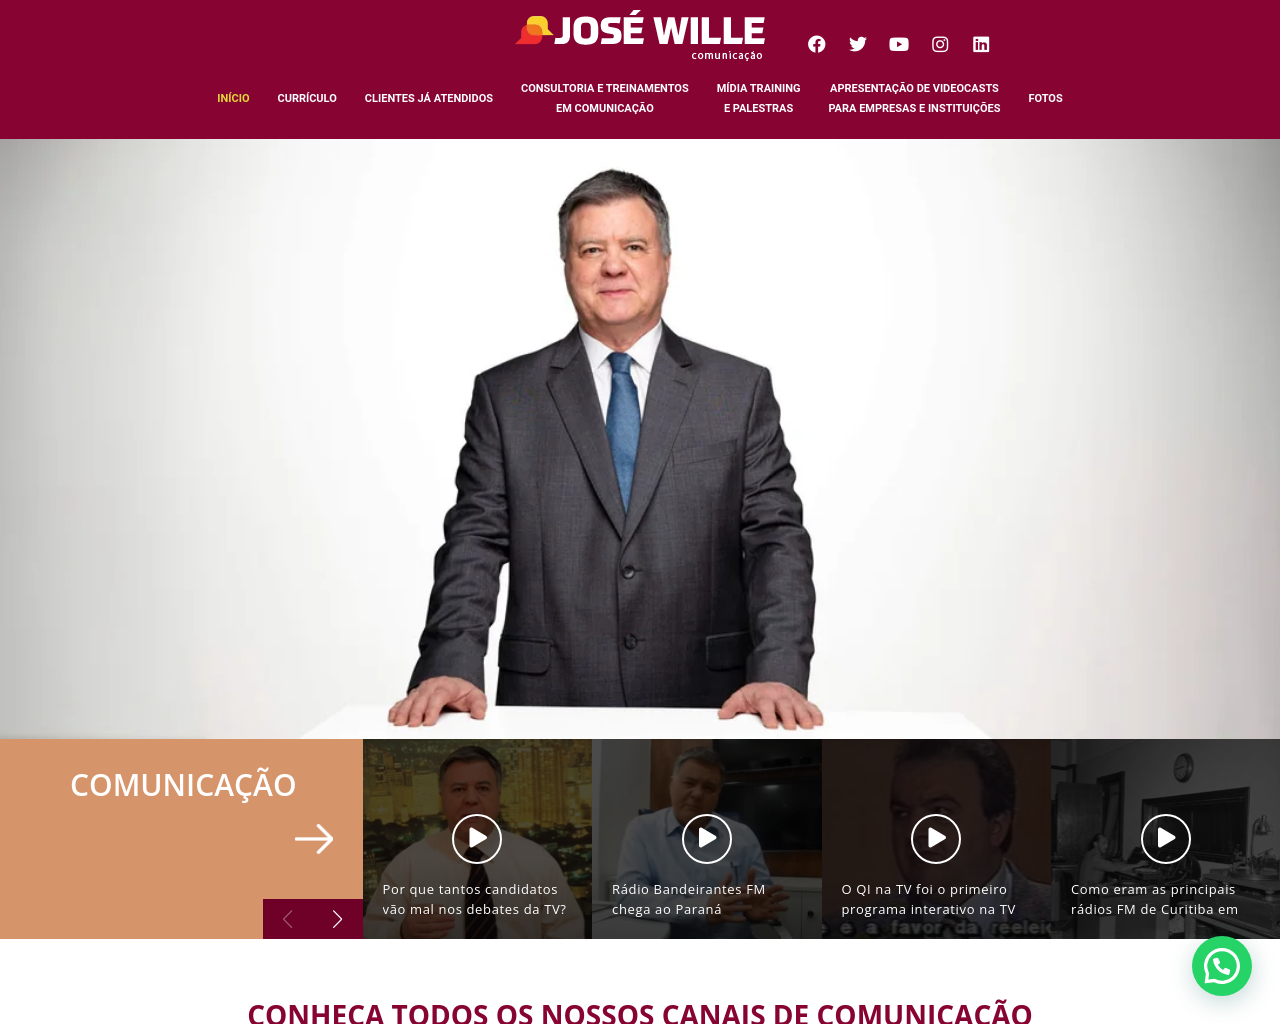 jws.com.br